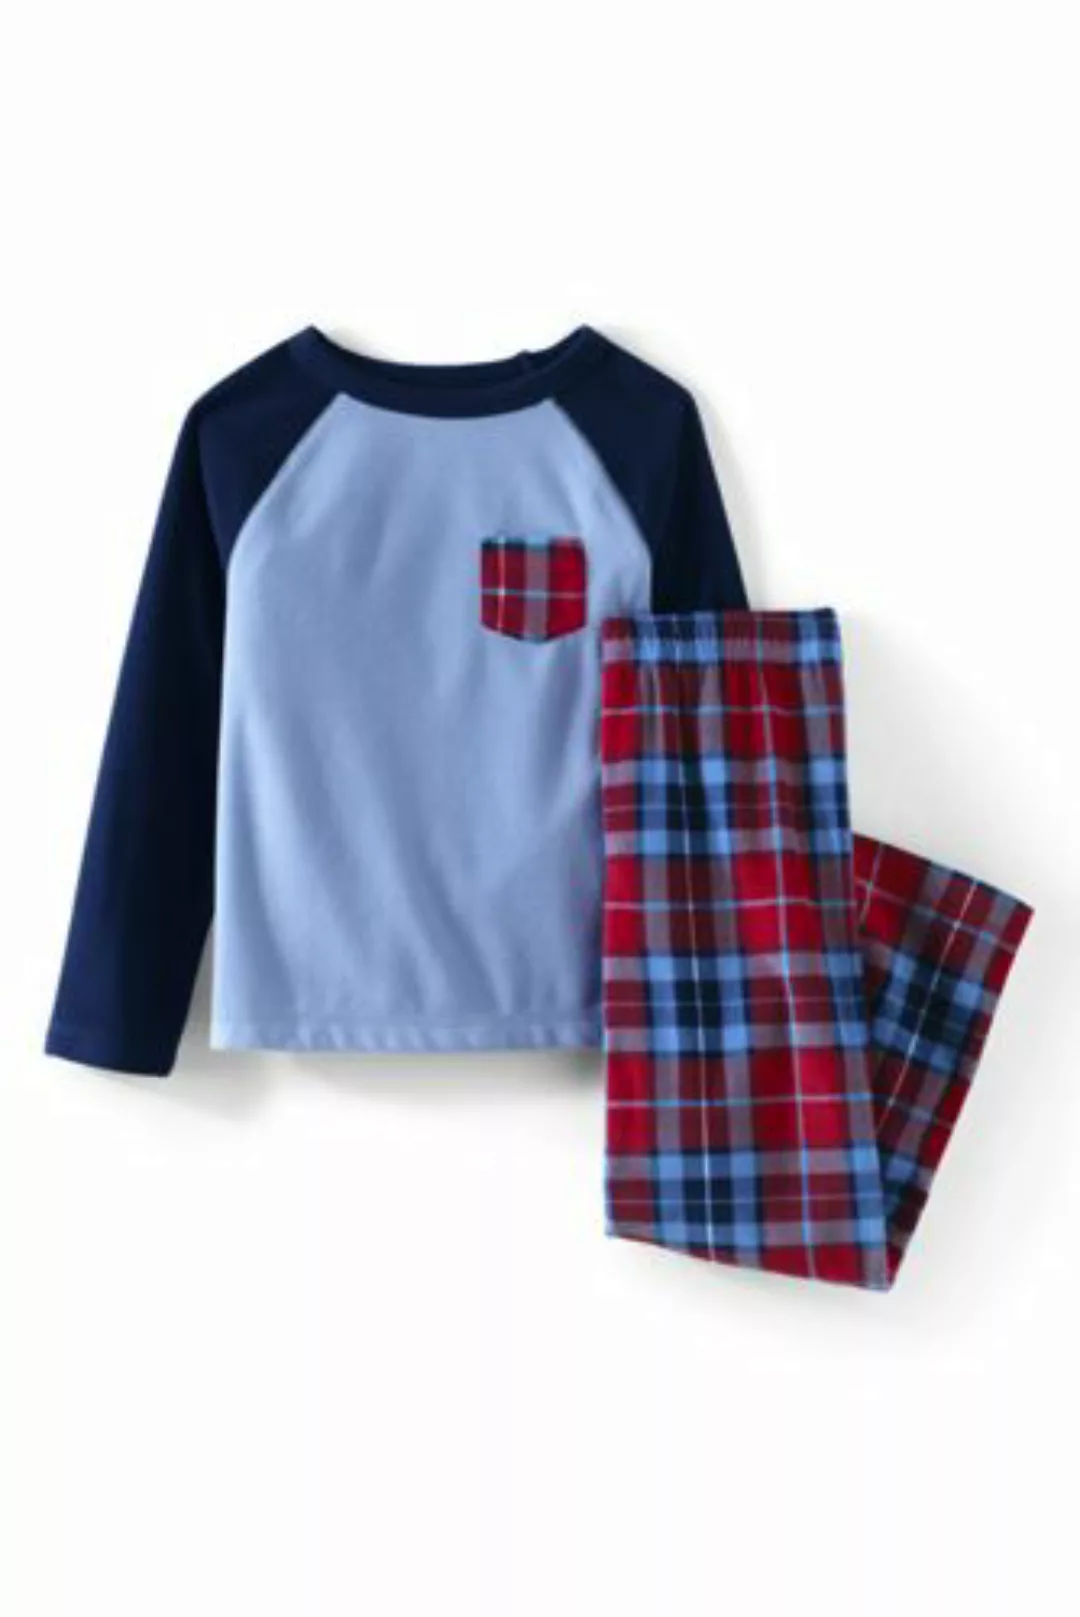 Pyjama-Set aus Fleece, Größe: 128-134, Rot, by Lands' End, Satt Rot Multi K günstig online kaufen